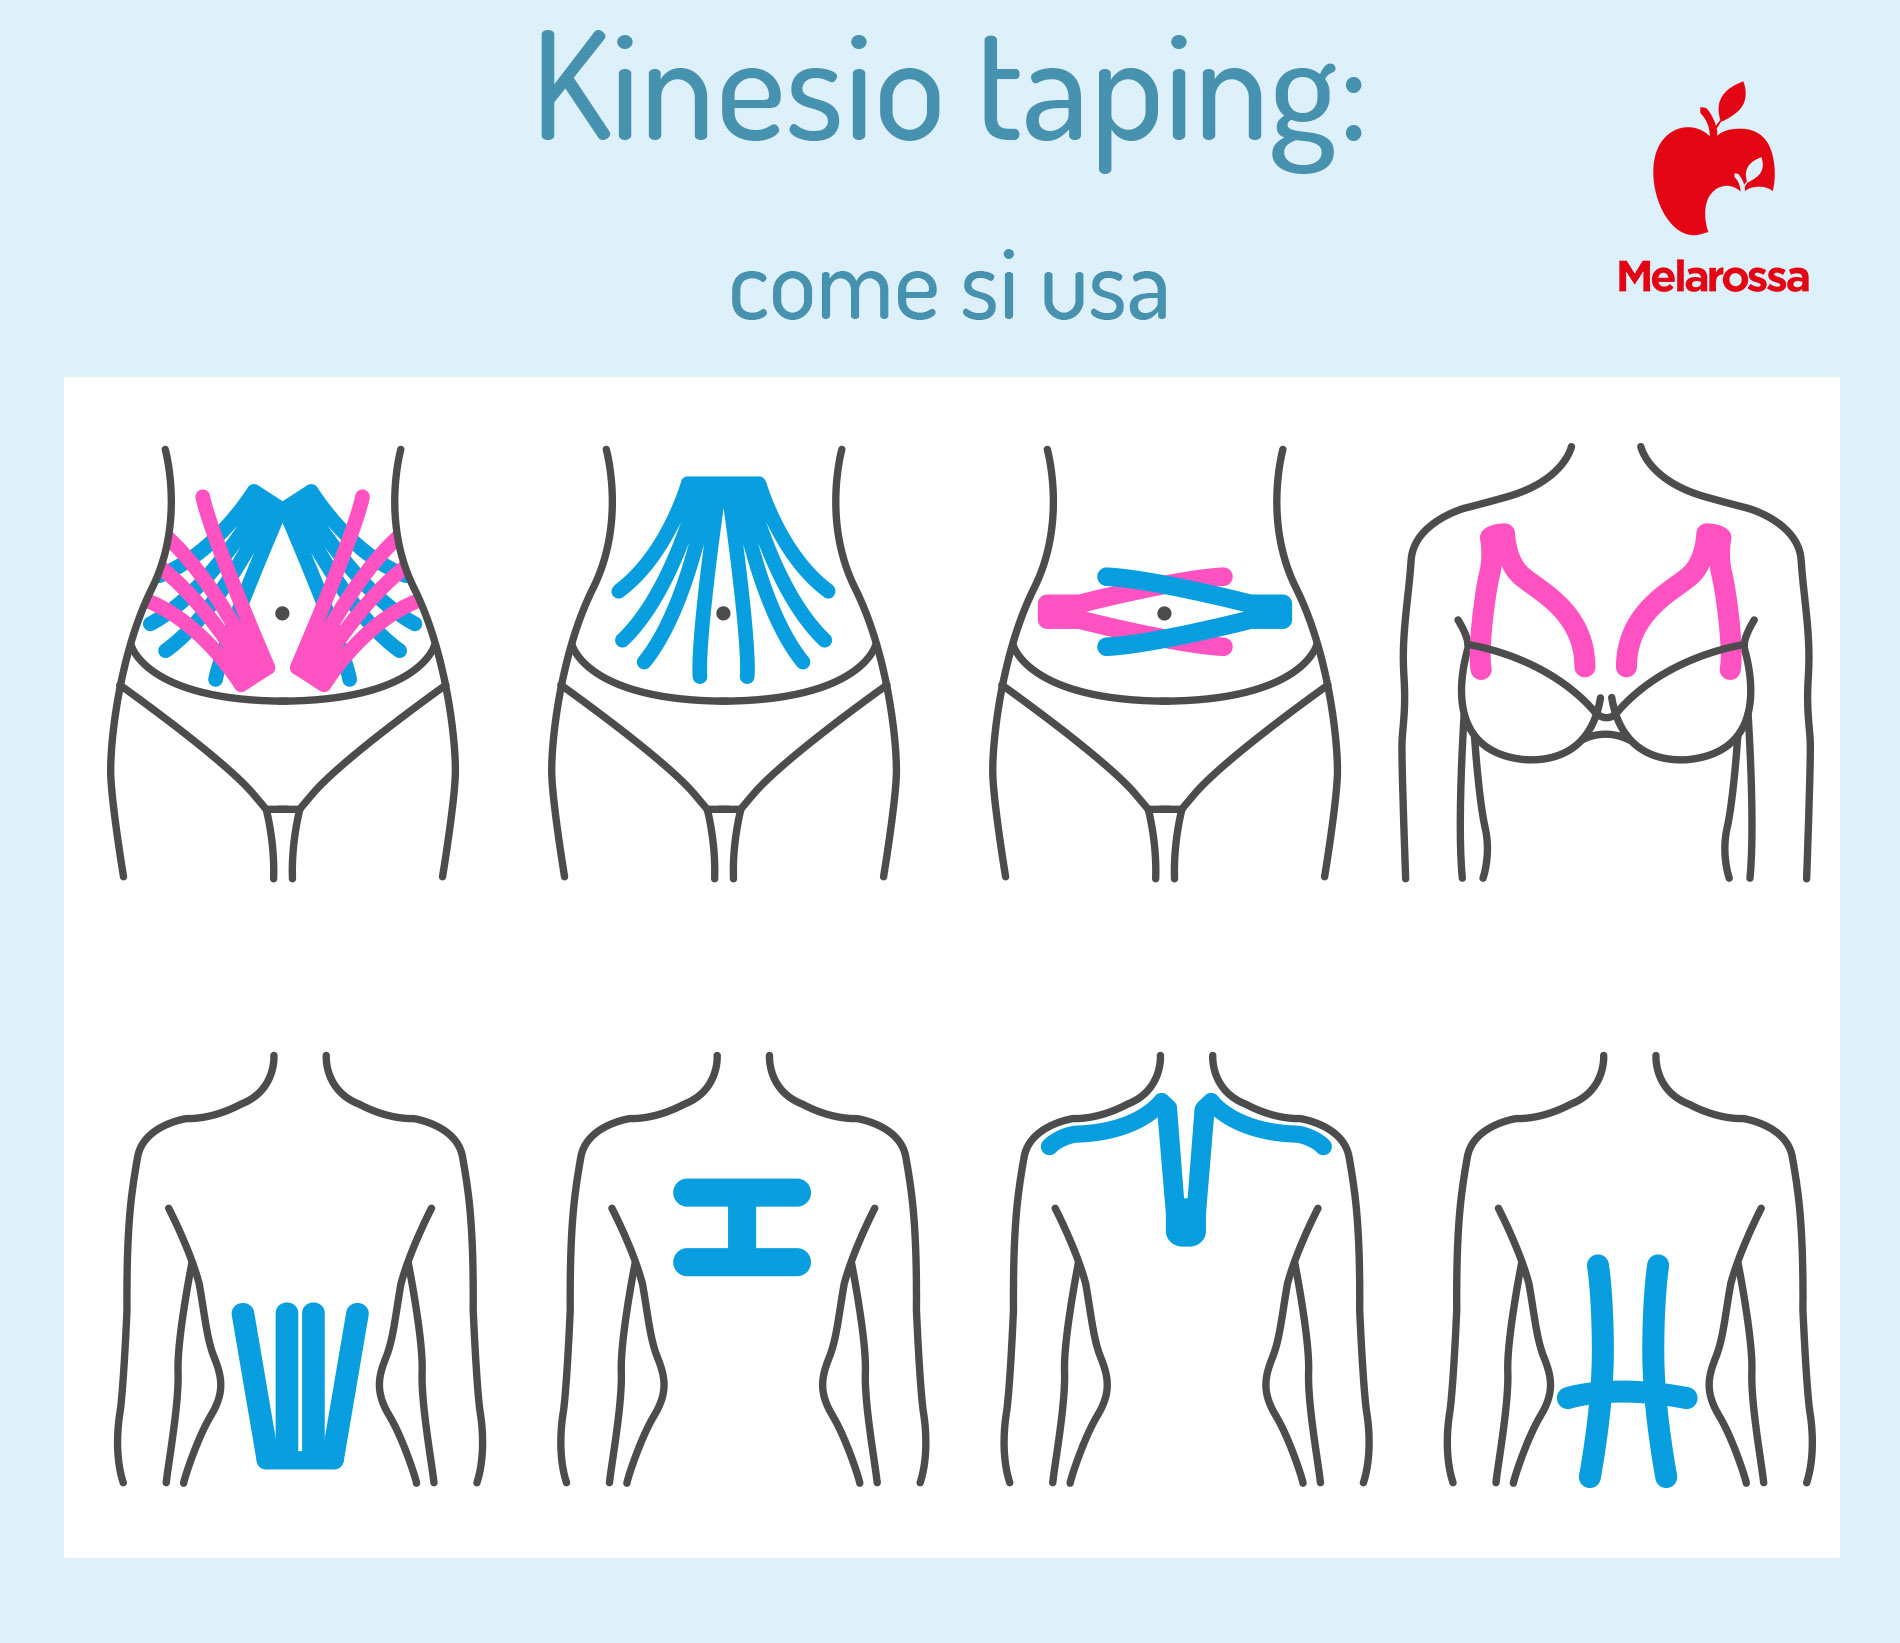 kinesio taping: come si usa